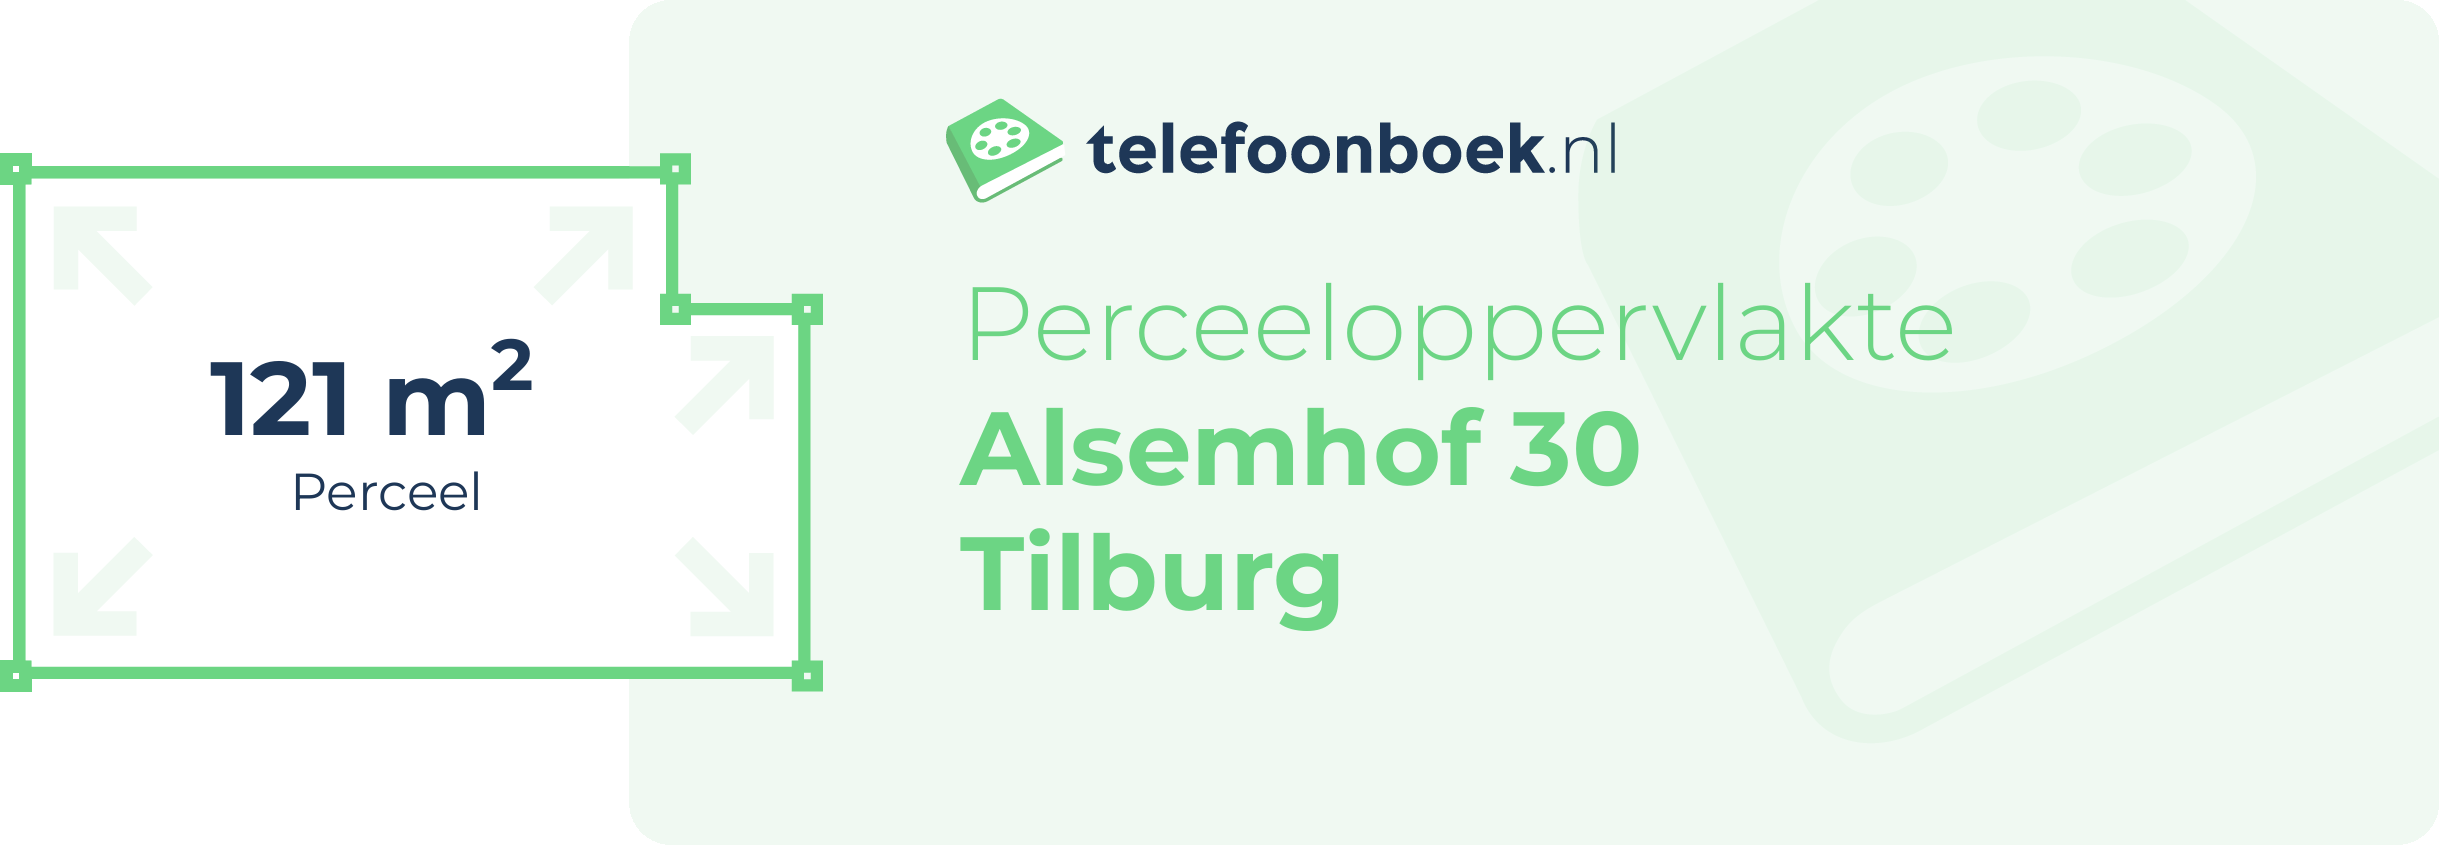 Perceeloppervlakte Alsemhof 30 Tilburg